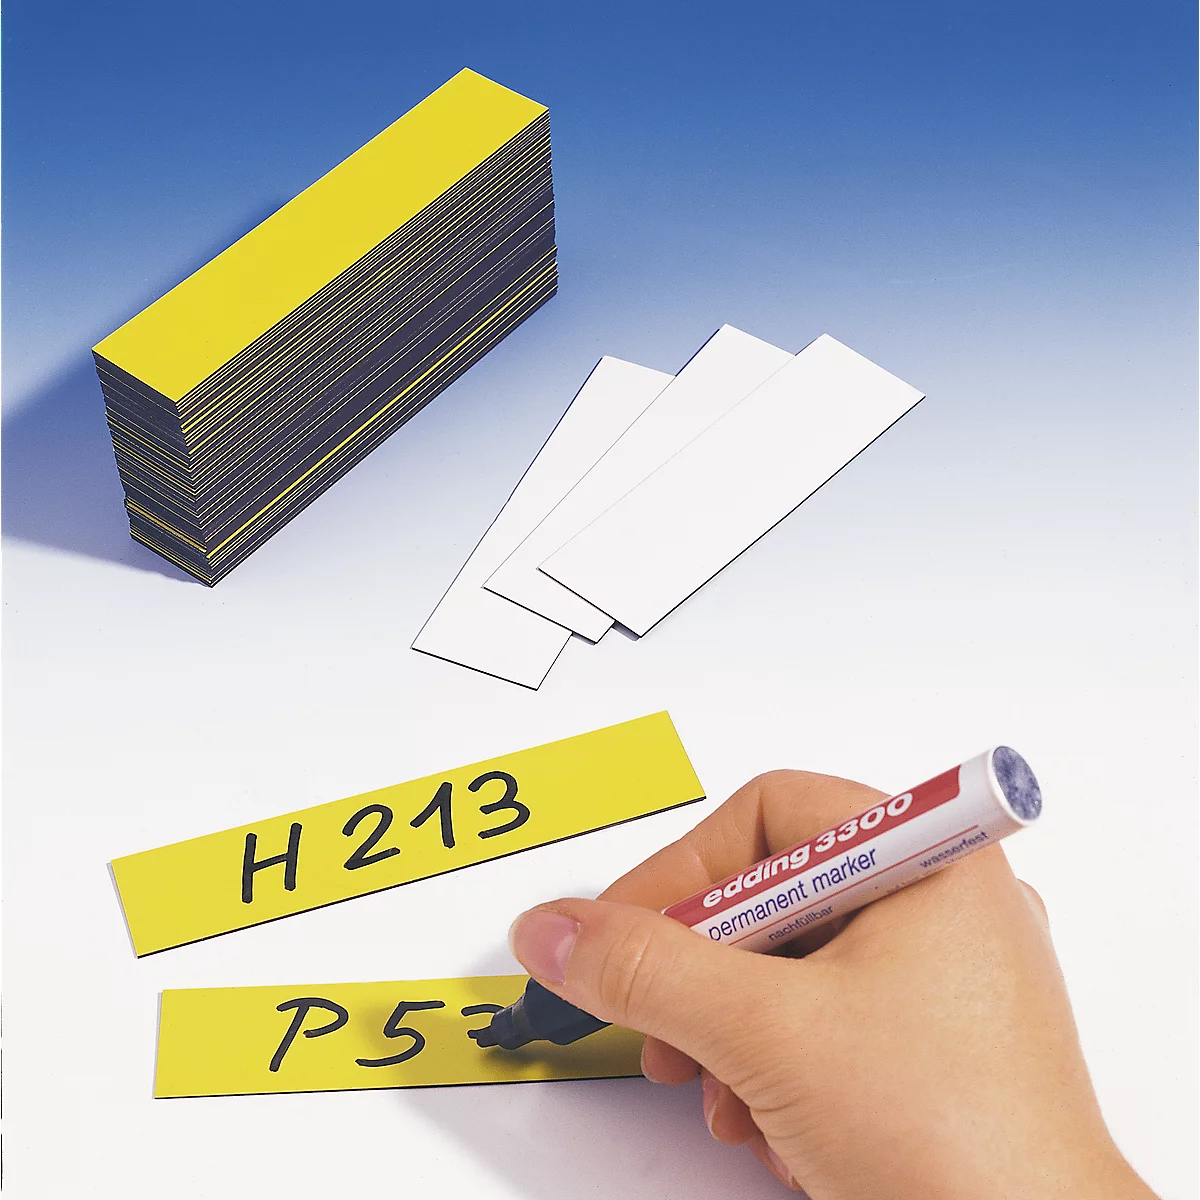 Étiquettes magnétiques pour rayonnage, 20 x 60 mm, jaune